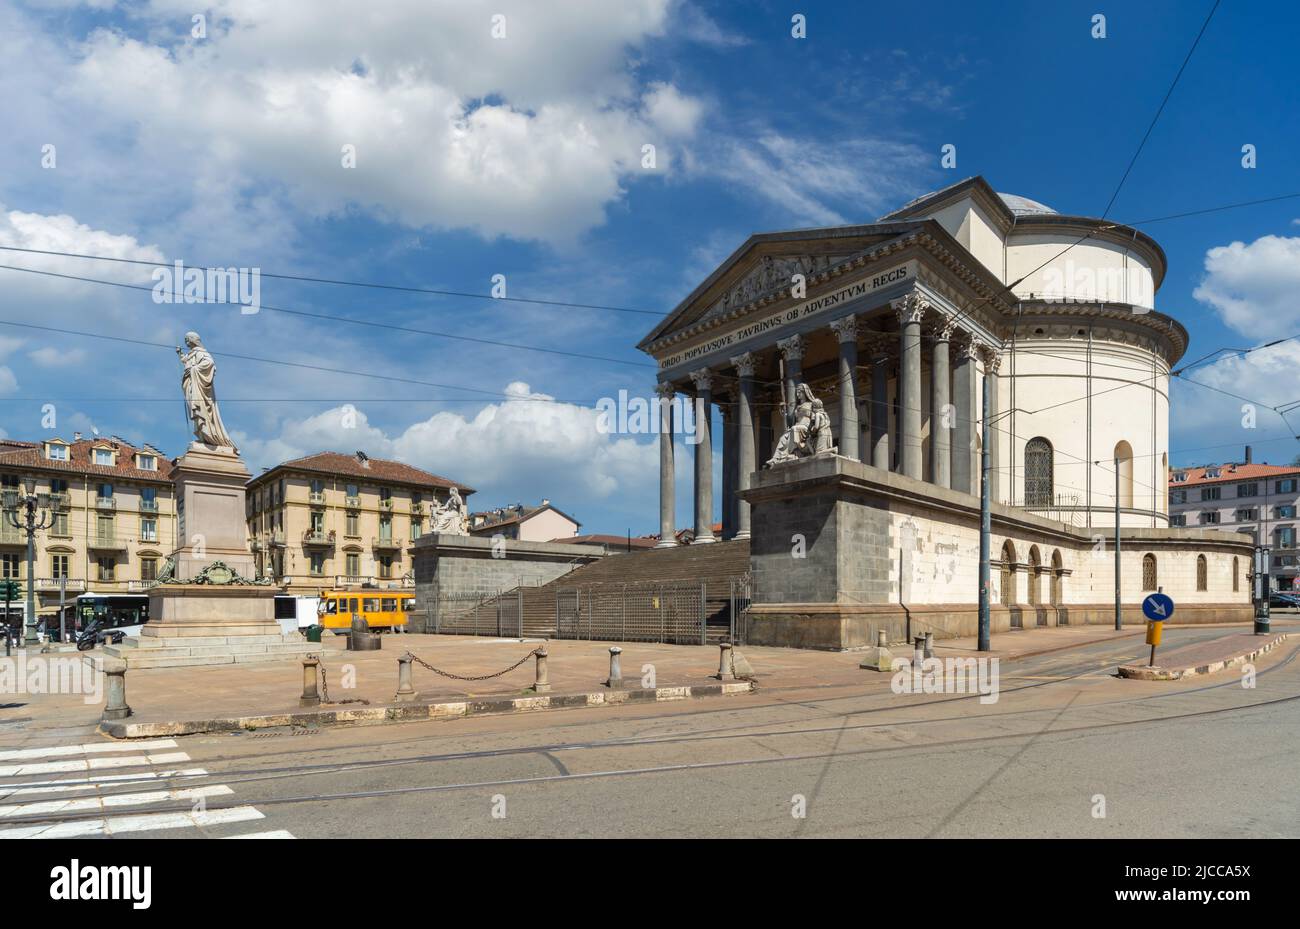 Eglise paroissiale catholique Gran Madre Di Dio sur la Piazza Gran Madre à Turin, Piémont, Italie. Paysage urbain avec ciel bleu et nuages blancs Banque D'Images